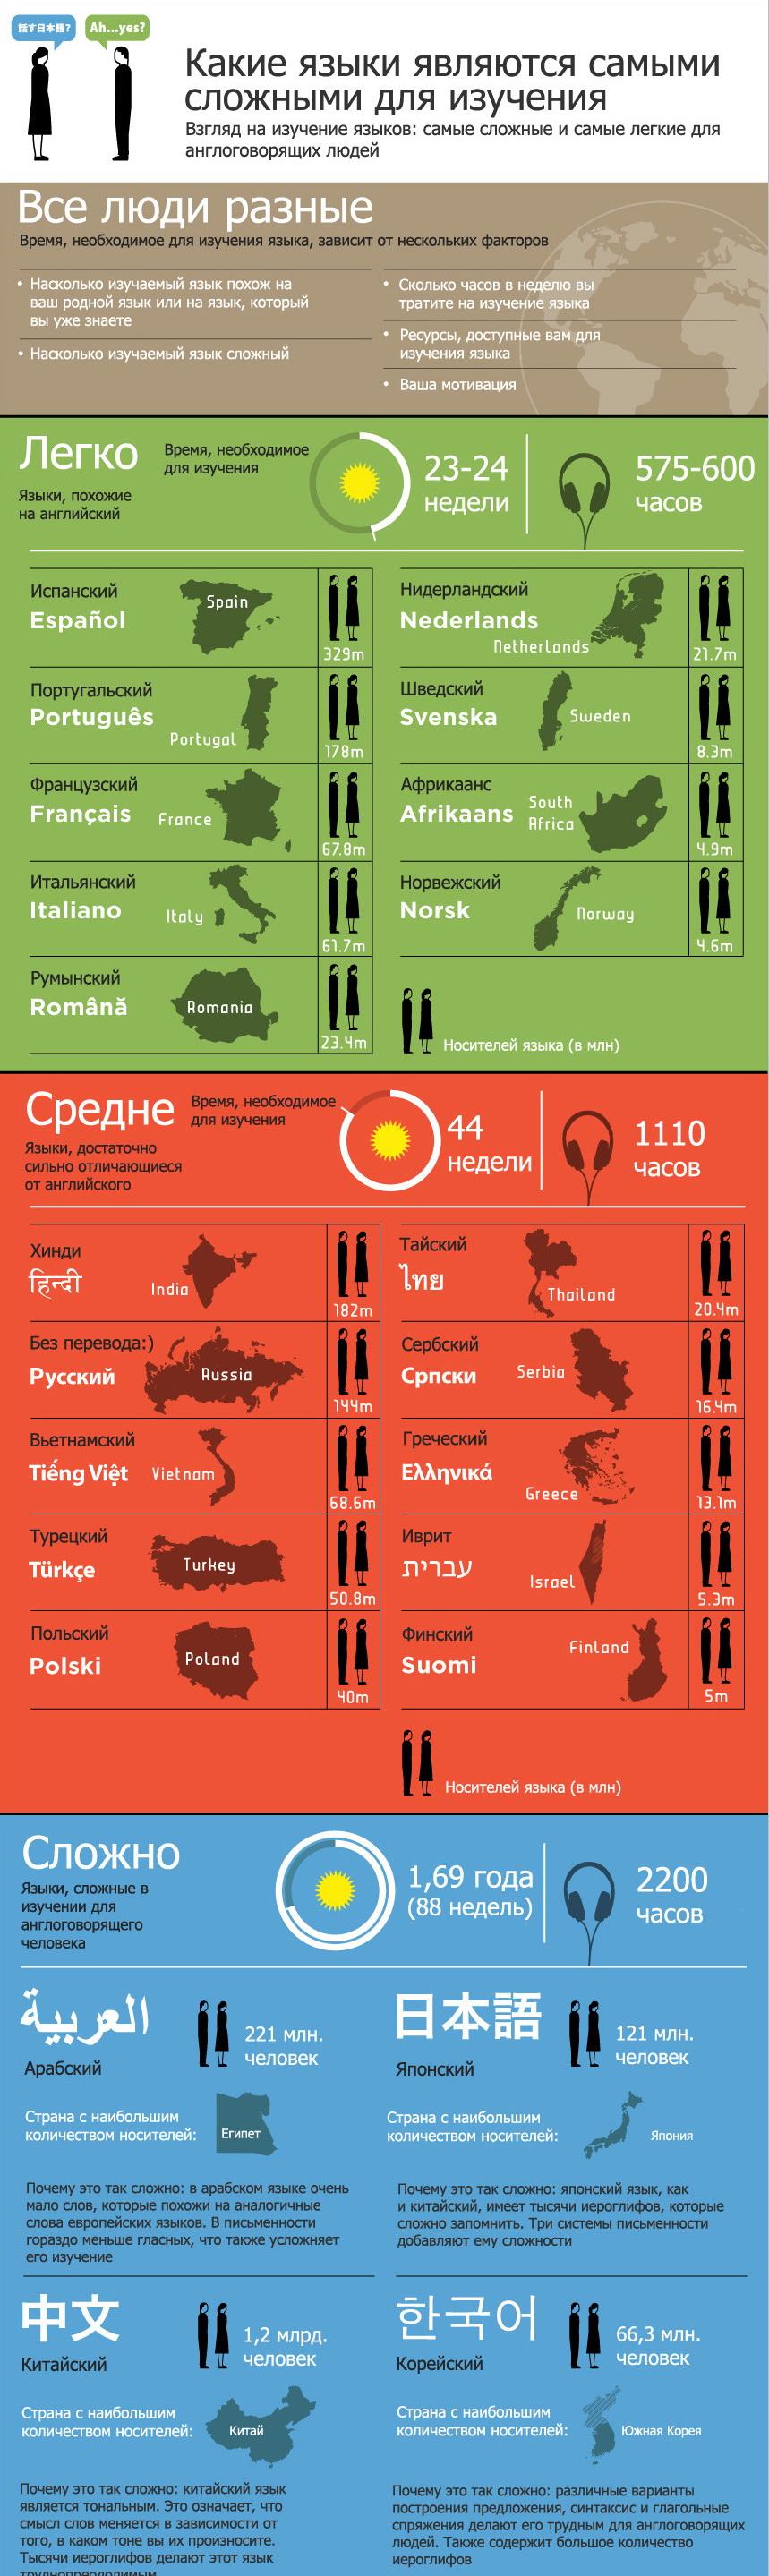 Какие языки сложны и просты в изучении